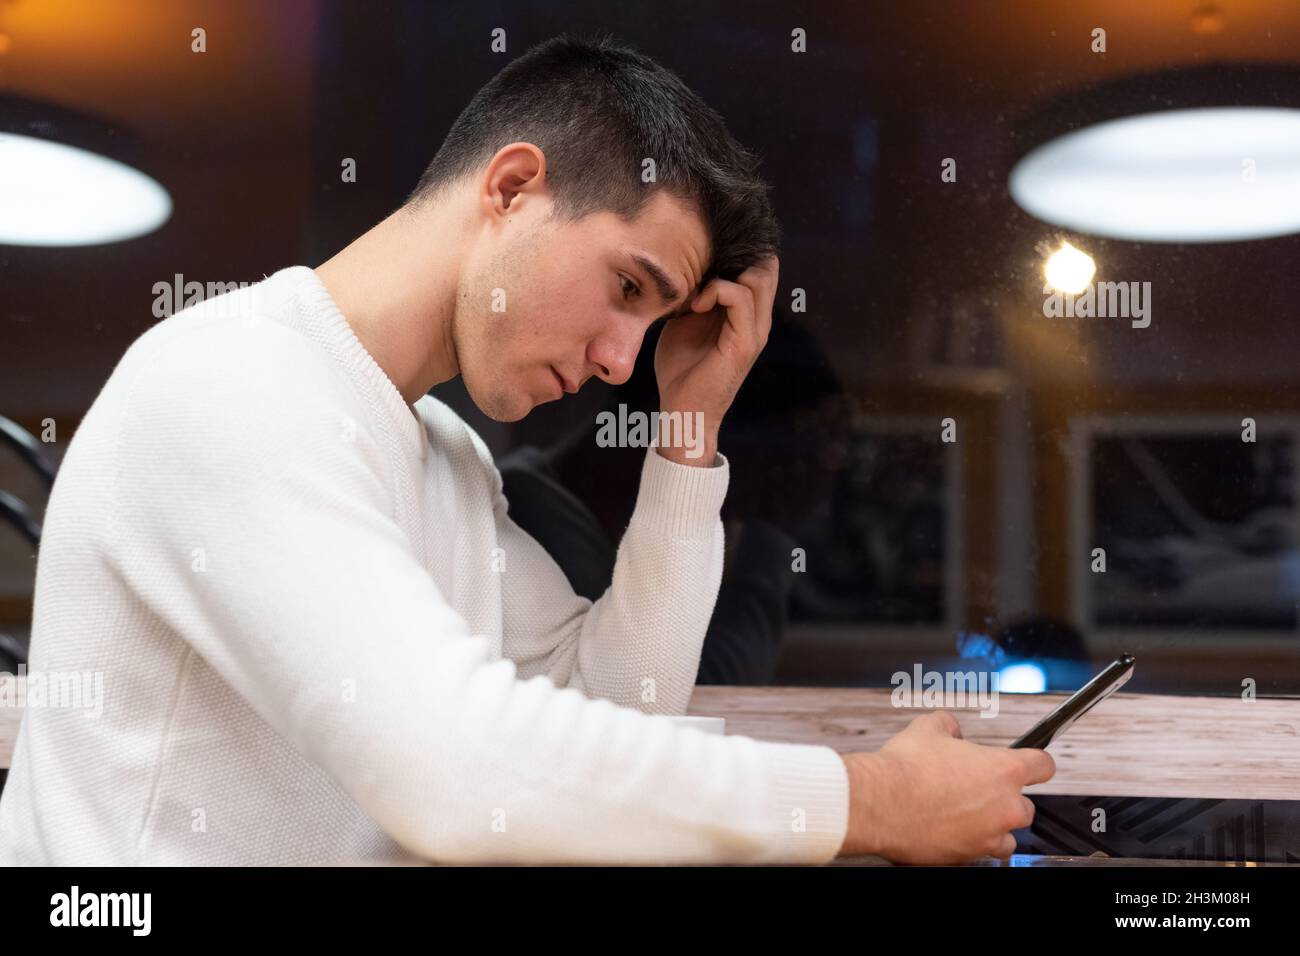 Frustrierter kaukasischer junger Mann, der Nachrichten mit enttäuschenden Nachrichten auf dem digitalen Smartphone liest. Stockfoto